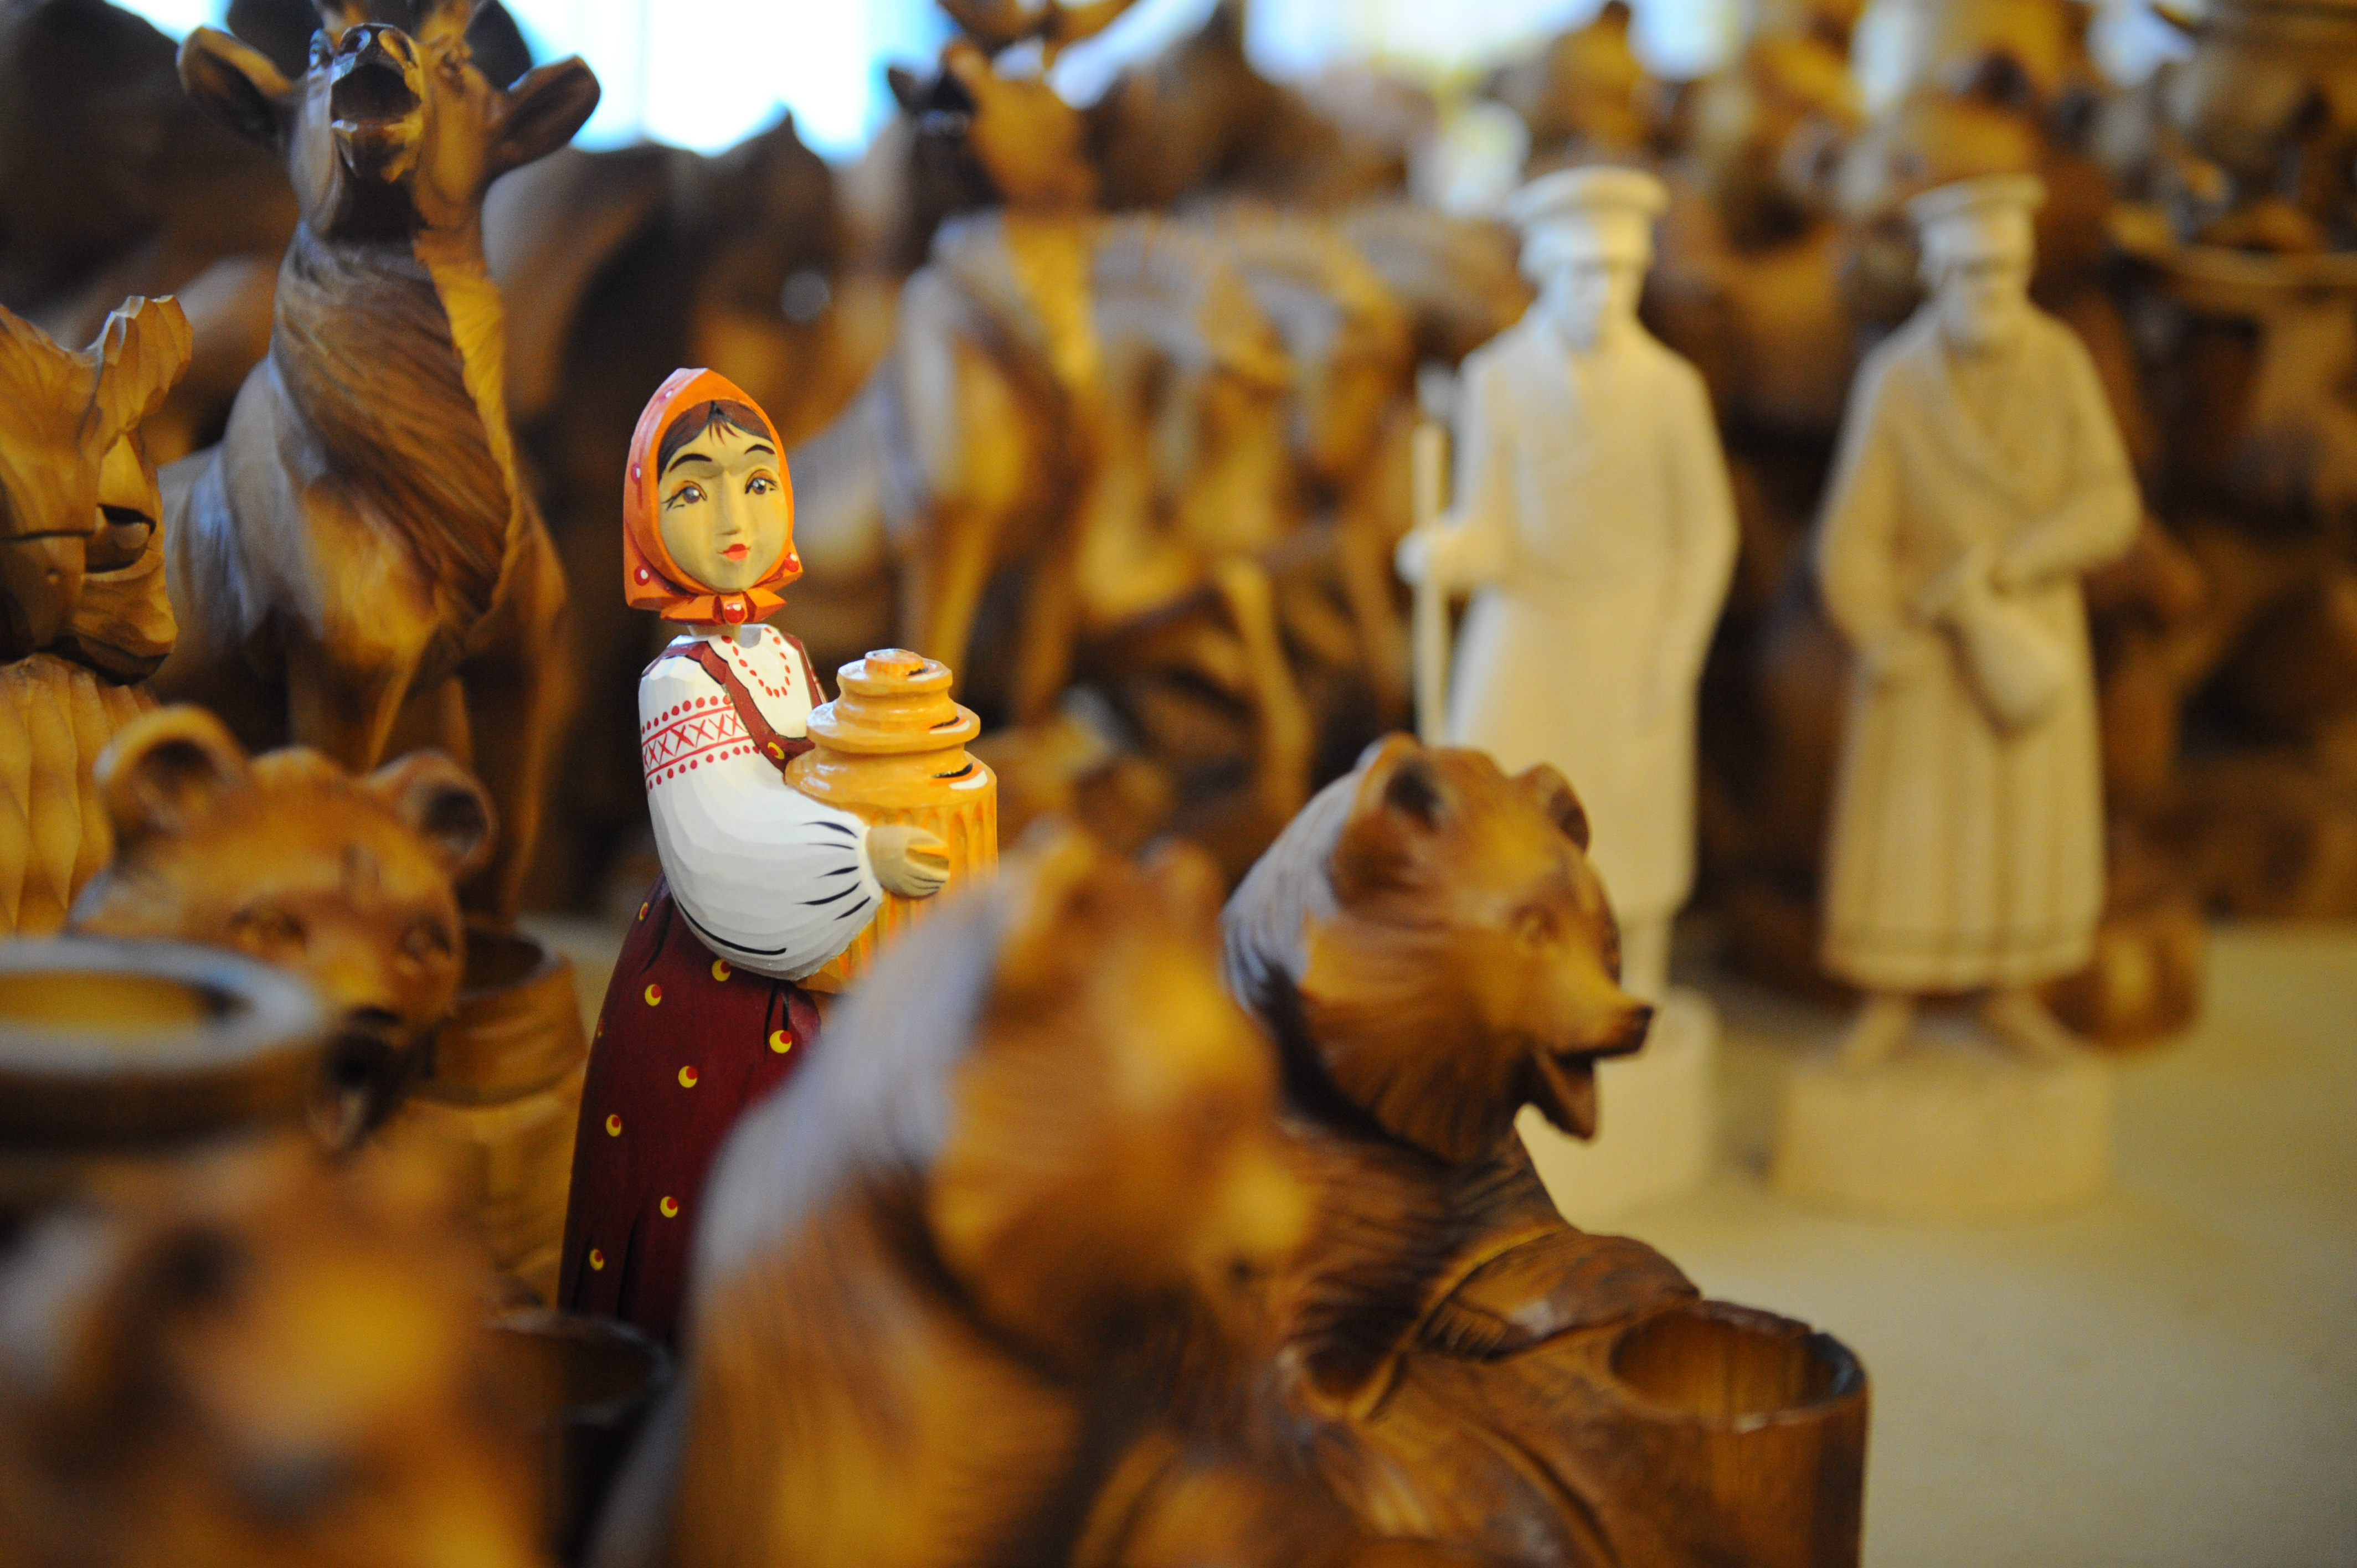 Самые редкие и знаменитые игрушки можно посмотреть в музее при Богородской фабрике